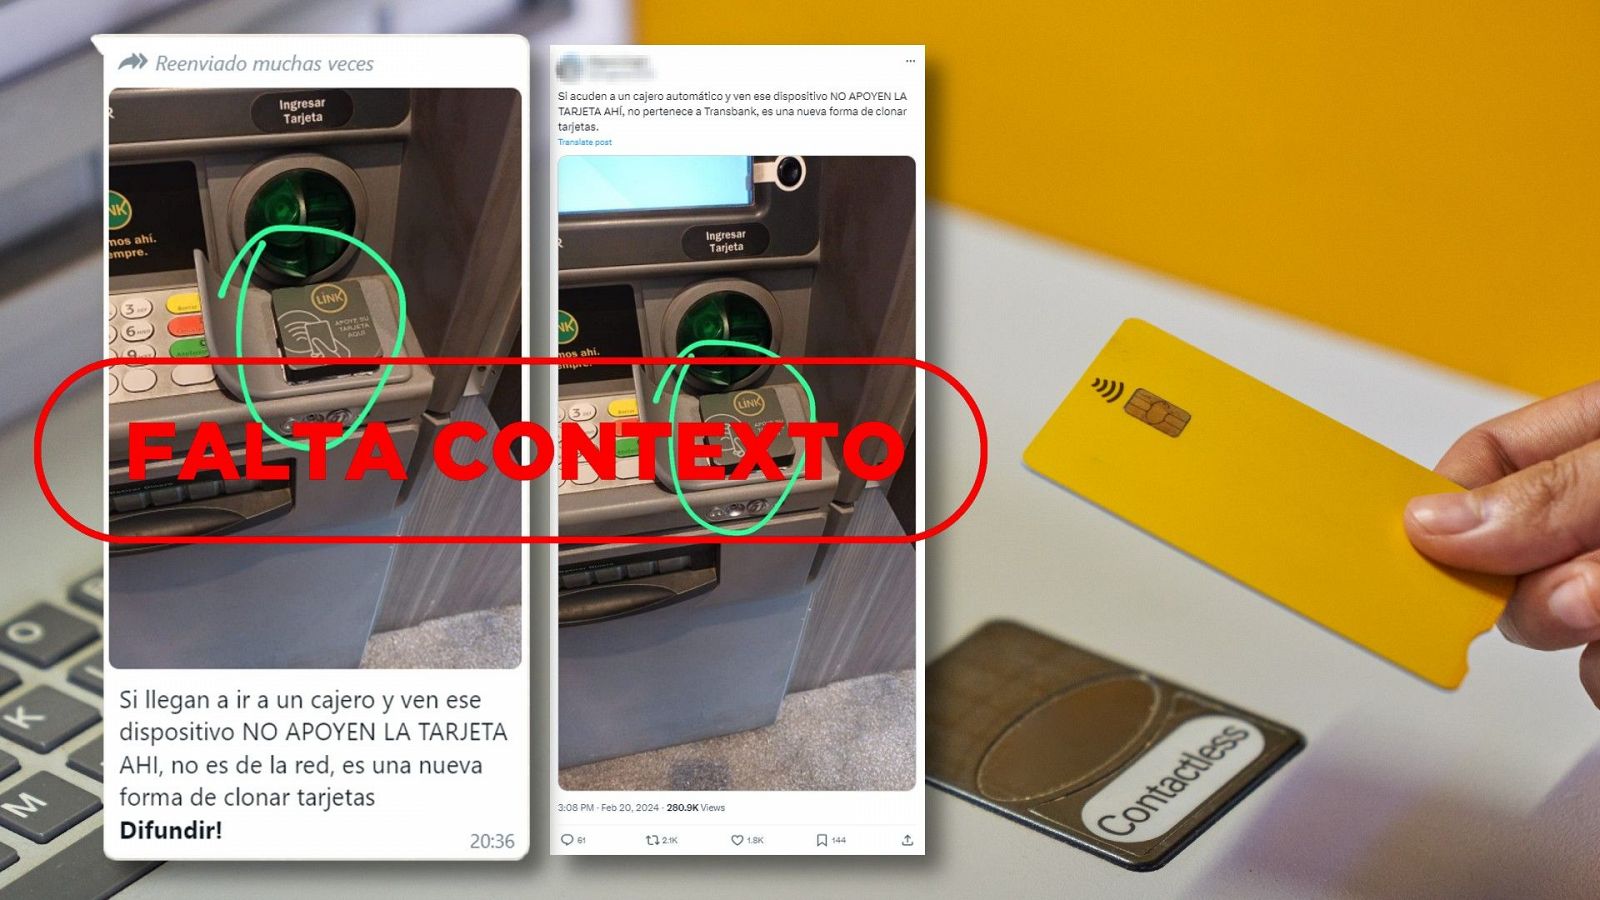 Este dispositivo que roba dinero de la tarjeta en cajeros no se ha detectado en España, es Argentina